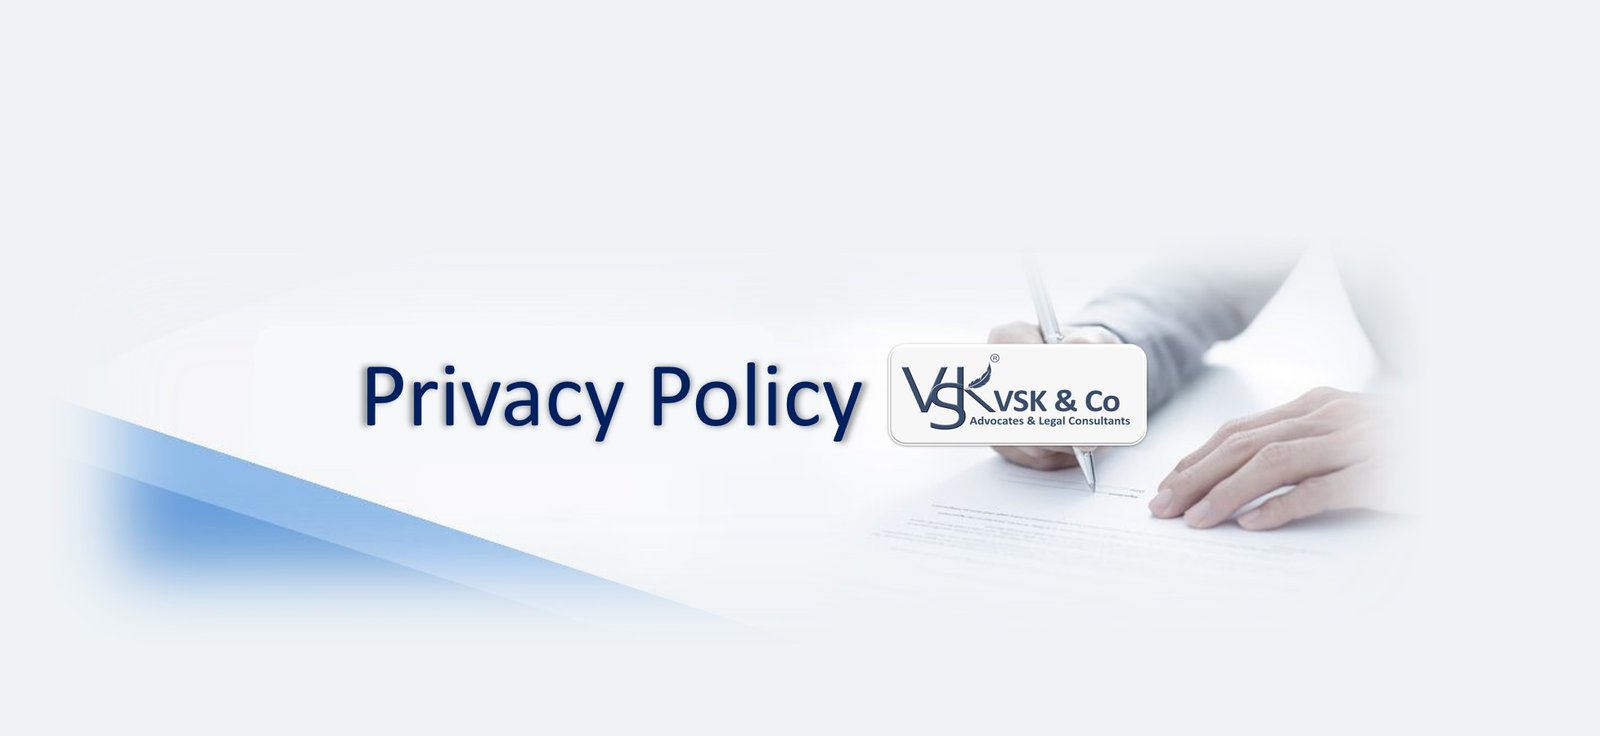 VSK & Co Privacy Policy